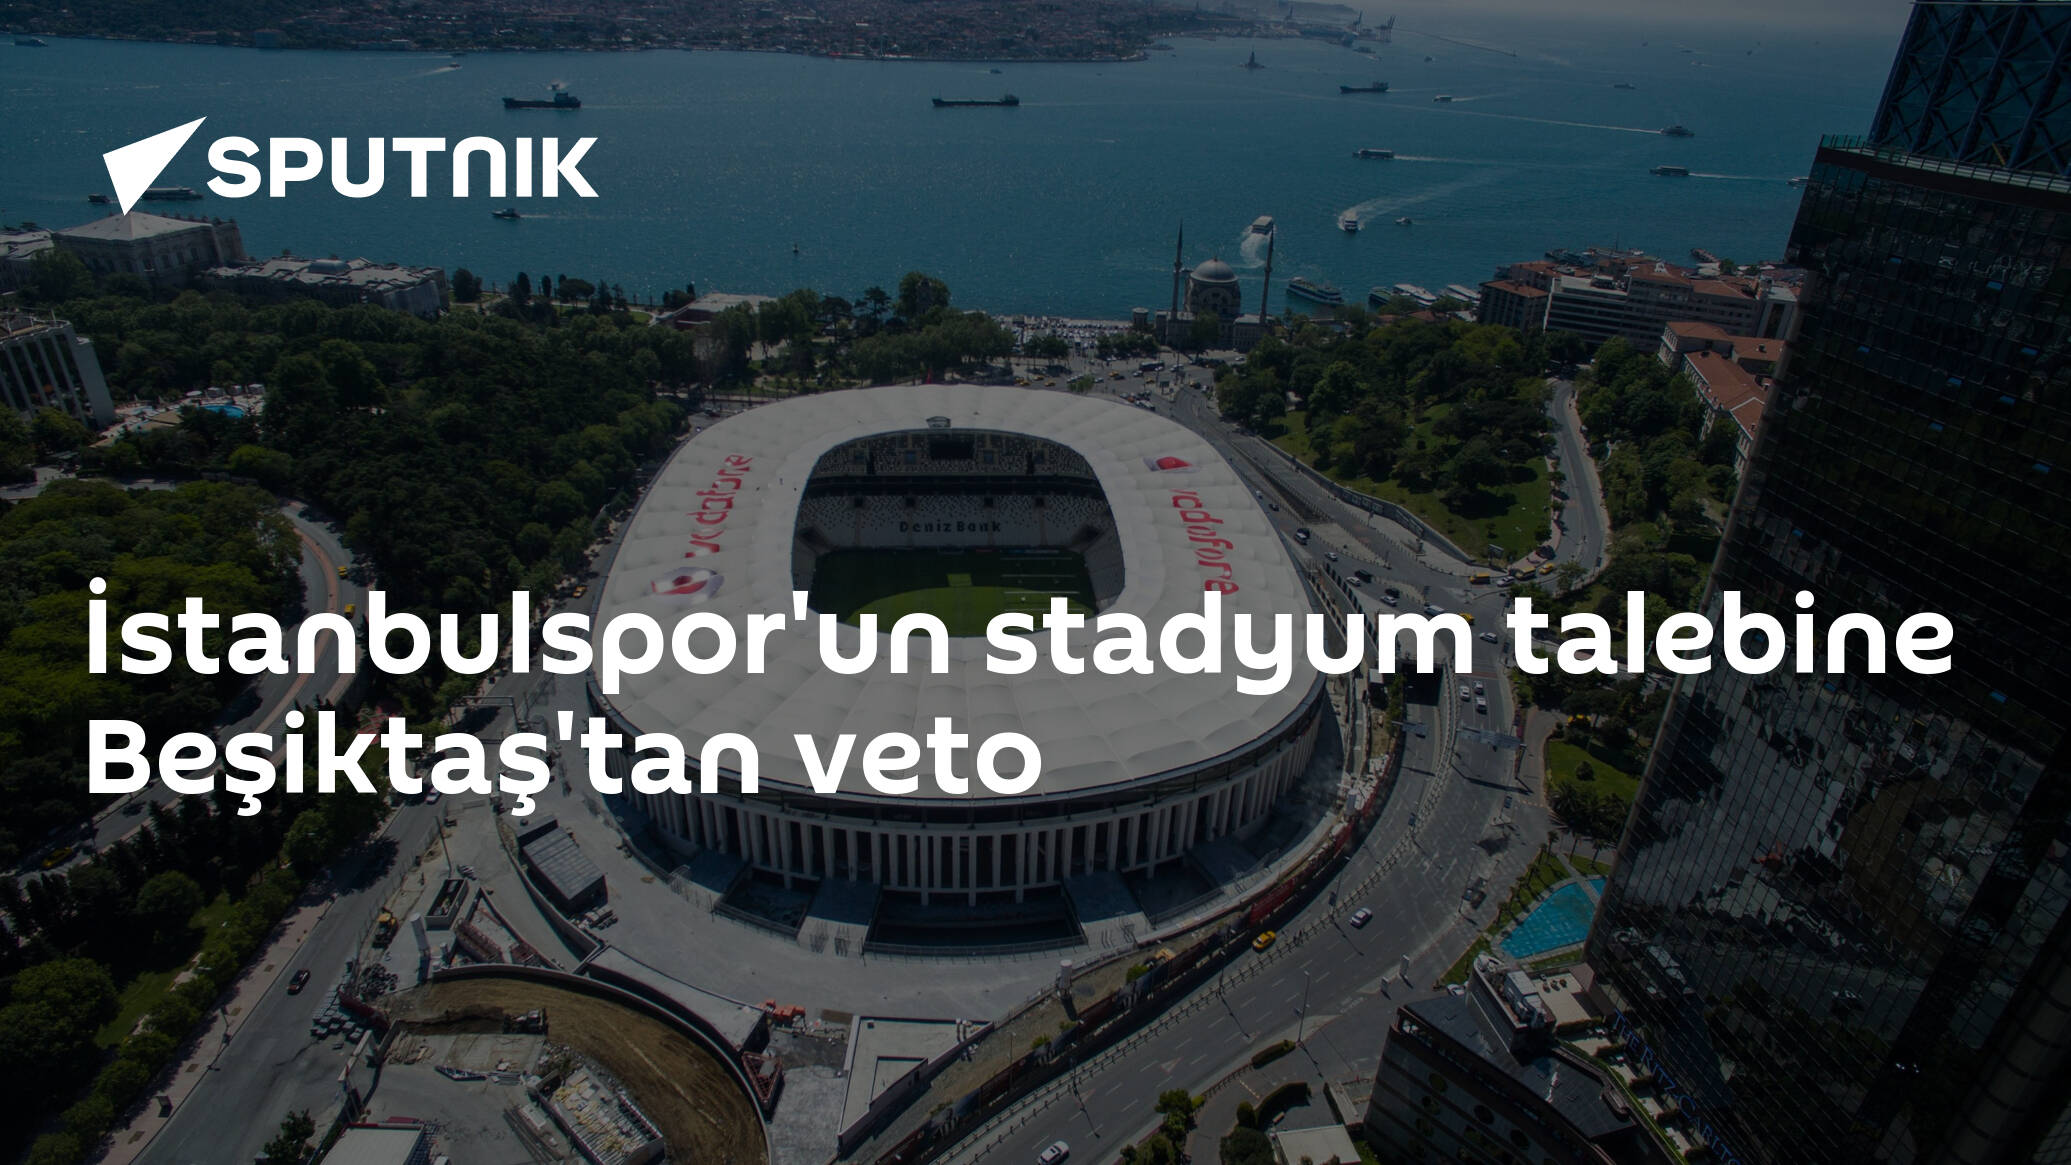 İstanbulspor'un talebine Beşiktaş'tan veto - Haber 7 Beşiktaş